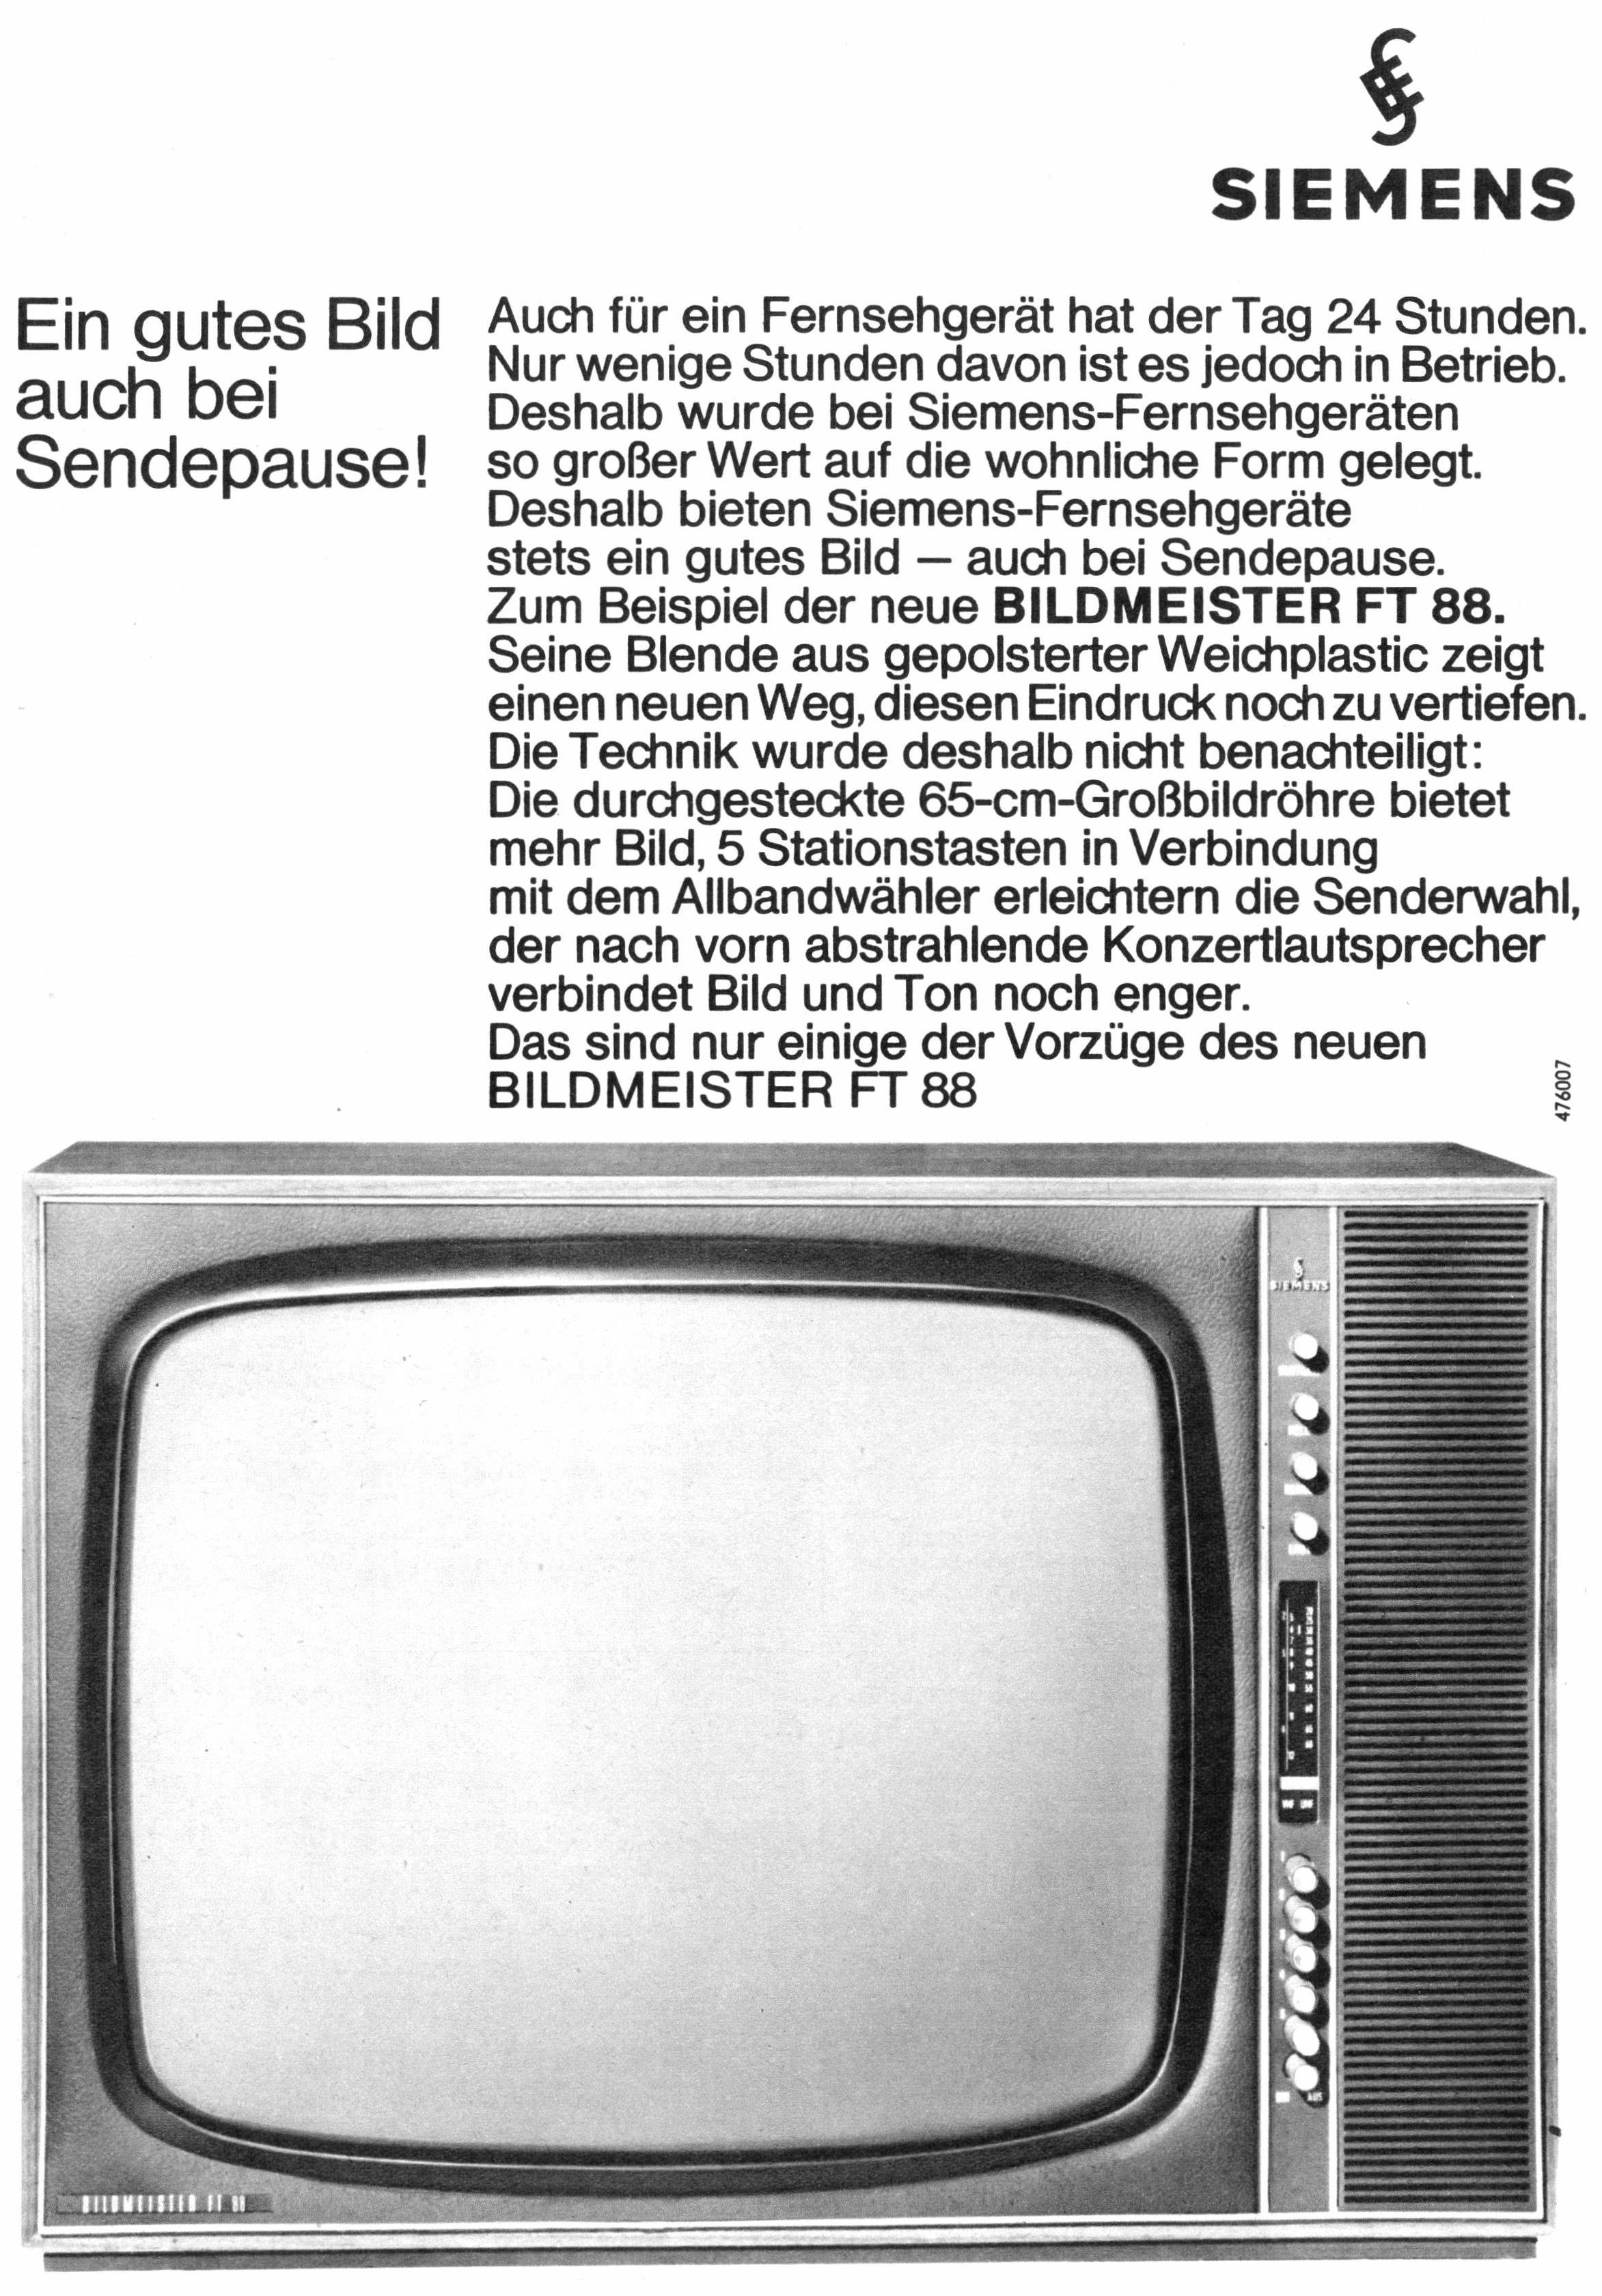 Siemens 1966 031.jpg